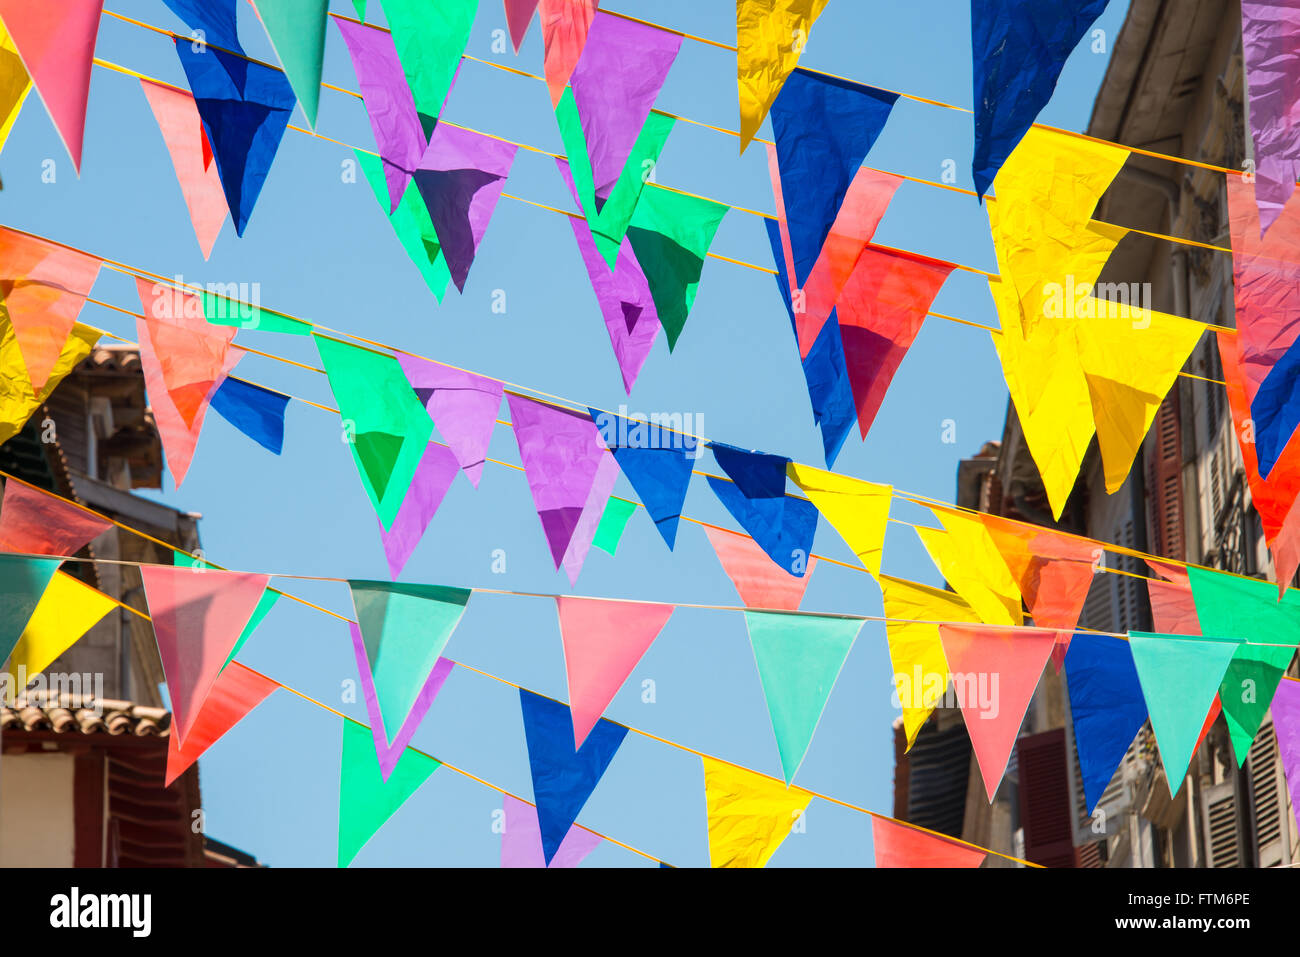 Guirlandes multicolores décorent les rues de la ville de Bayonne durant le festival d'été (fêtes de Bayonne) en août Banque D'Images